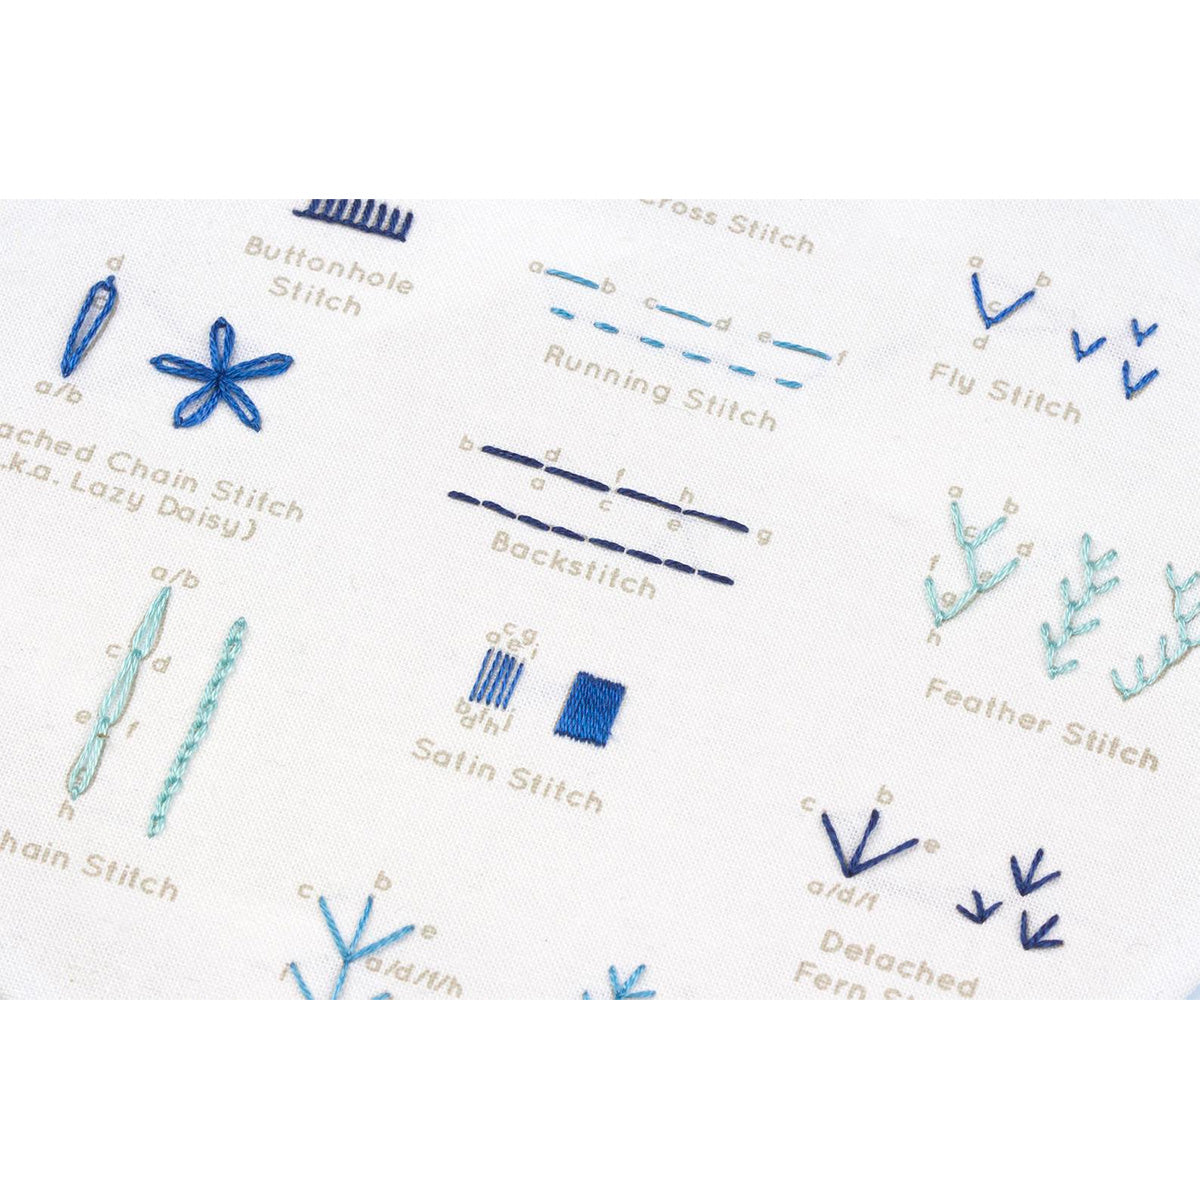 Hand Embroidery Stitch Sampler - Beginner Stitches